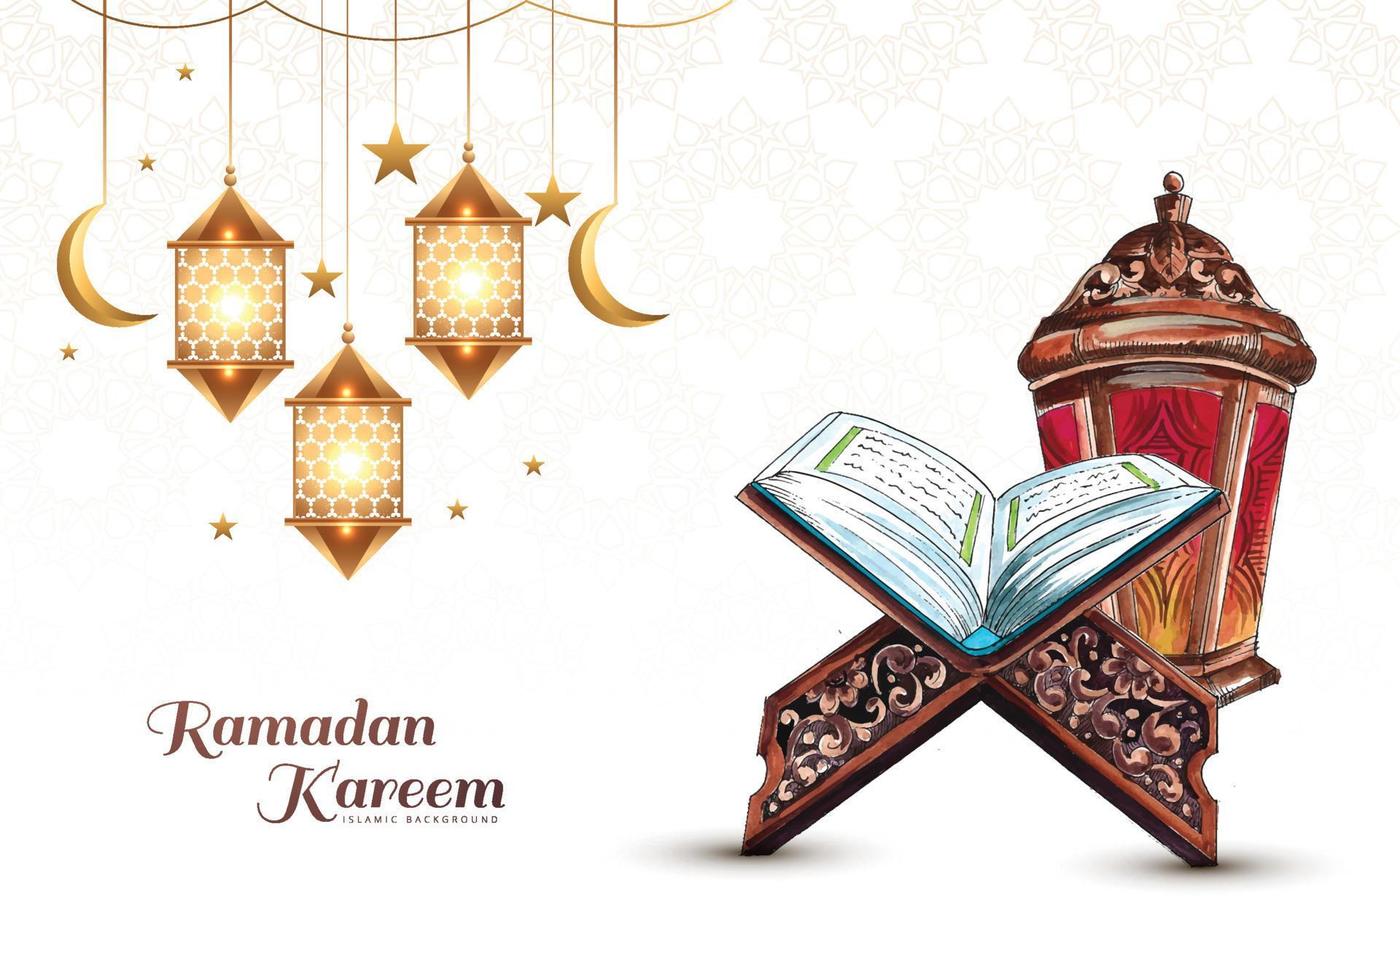 hermoso ramadán kareem libro sagrado del corán para el fondo de vacaciones musulmanas vector